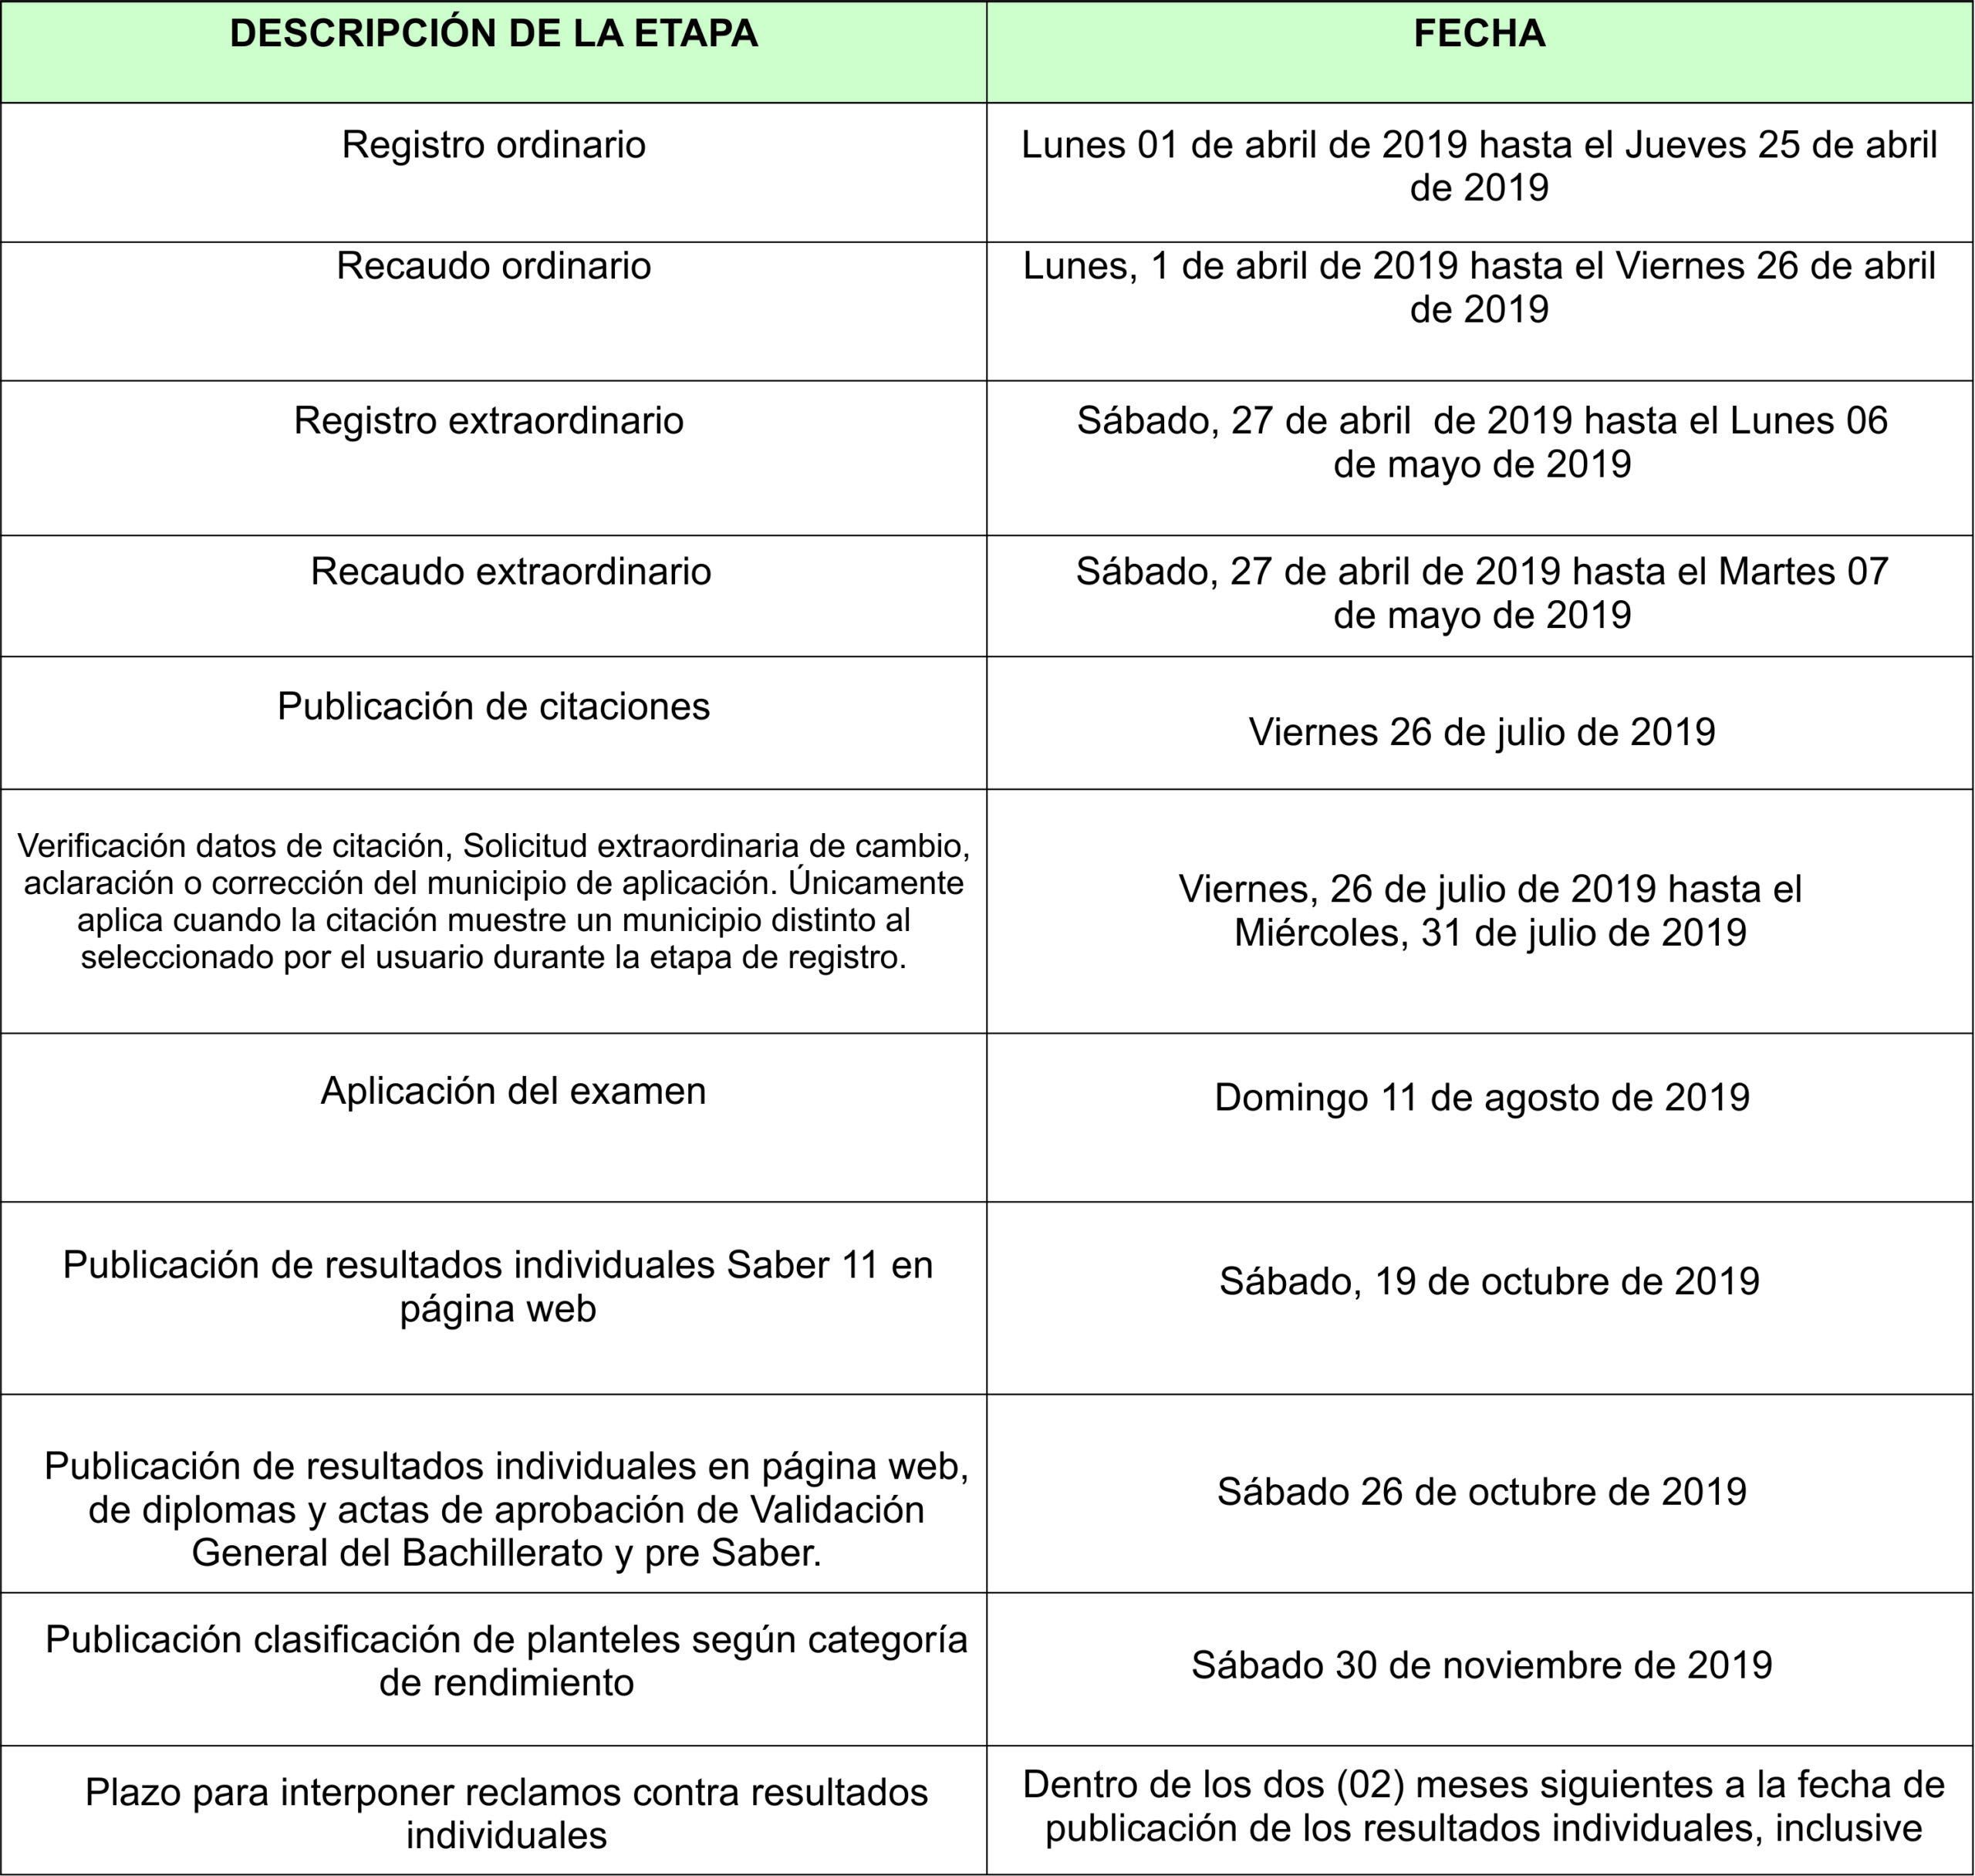 calendario fechas icfes 2019 segundo semestre-2